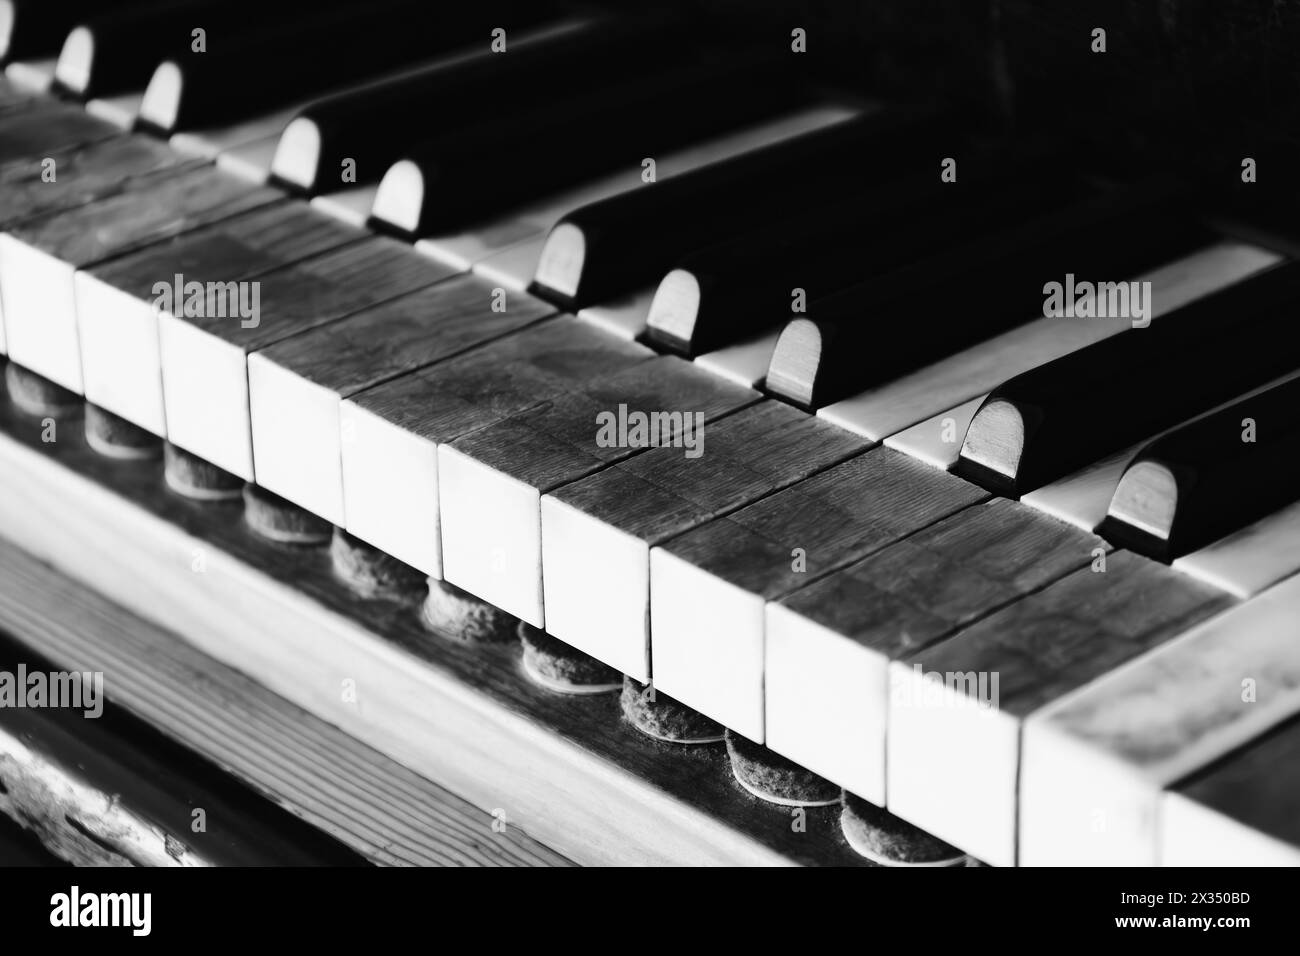 Très vieux clavier de piano avec les signes du temps. Touches anciennes avec de la saleté sur vieux piano à queue en bois. Instrument de musique vintage. Concept de créativité Banque D'Images